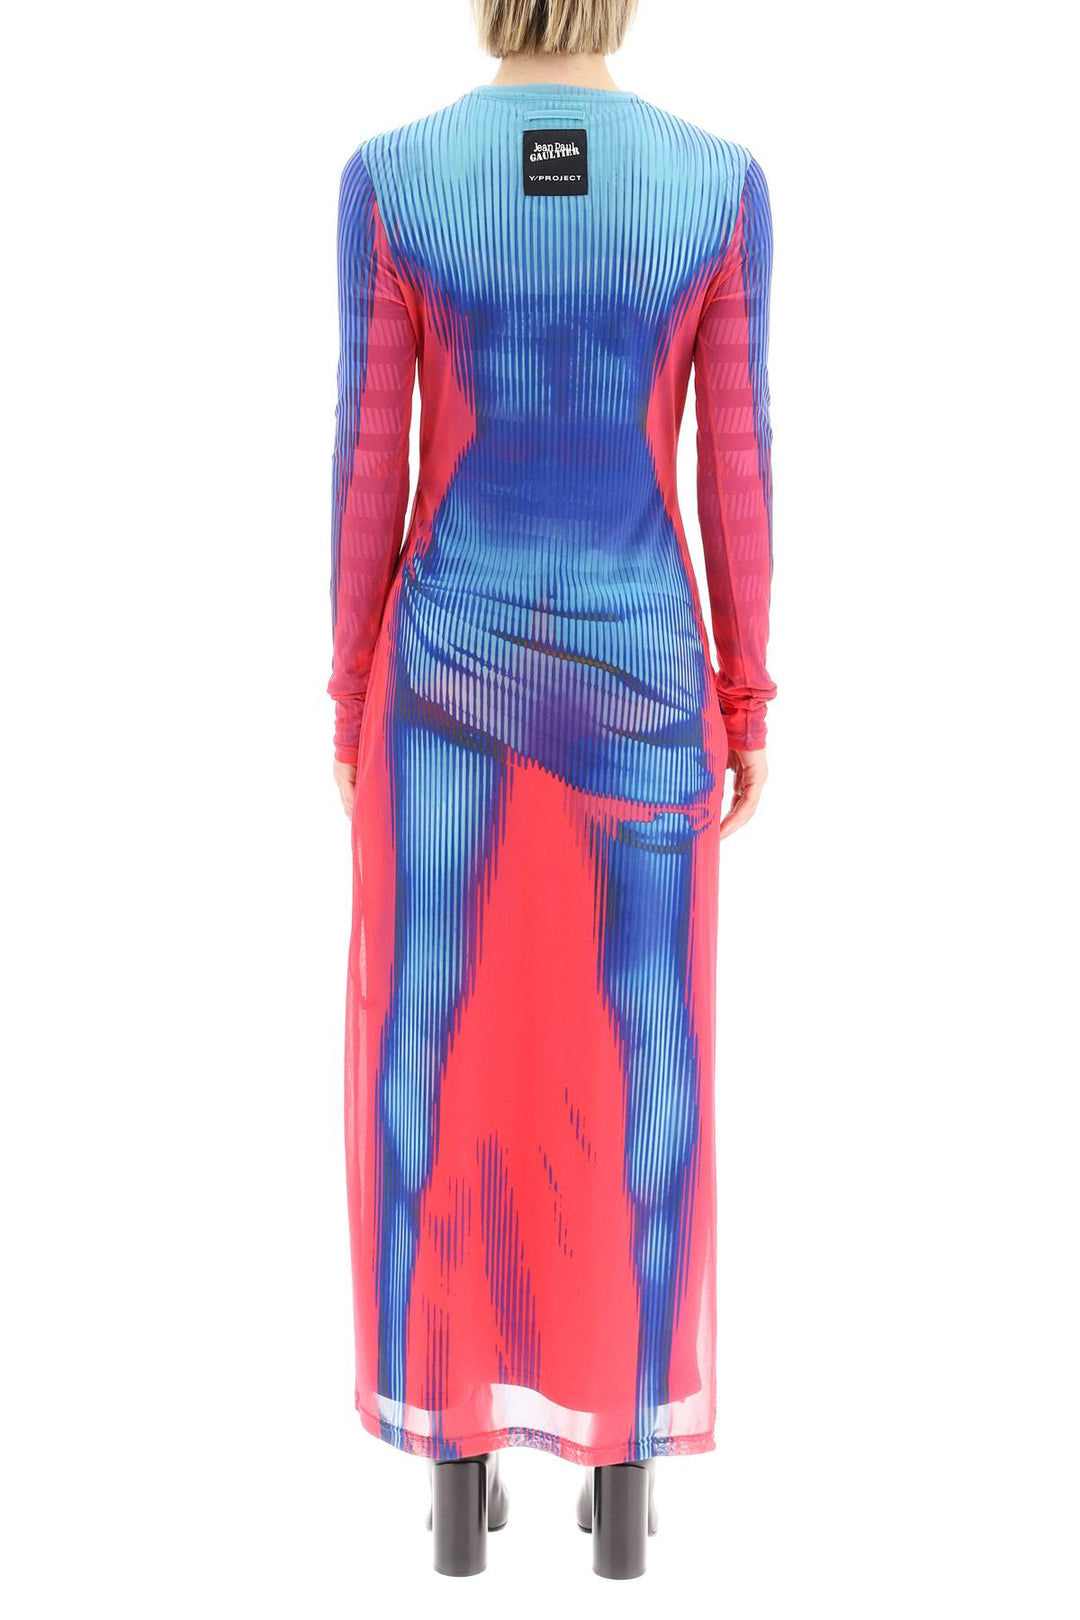 Y Project Jean Paul Gaultier Body Morph Dress   Blu